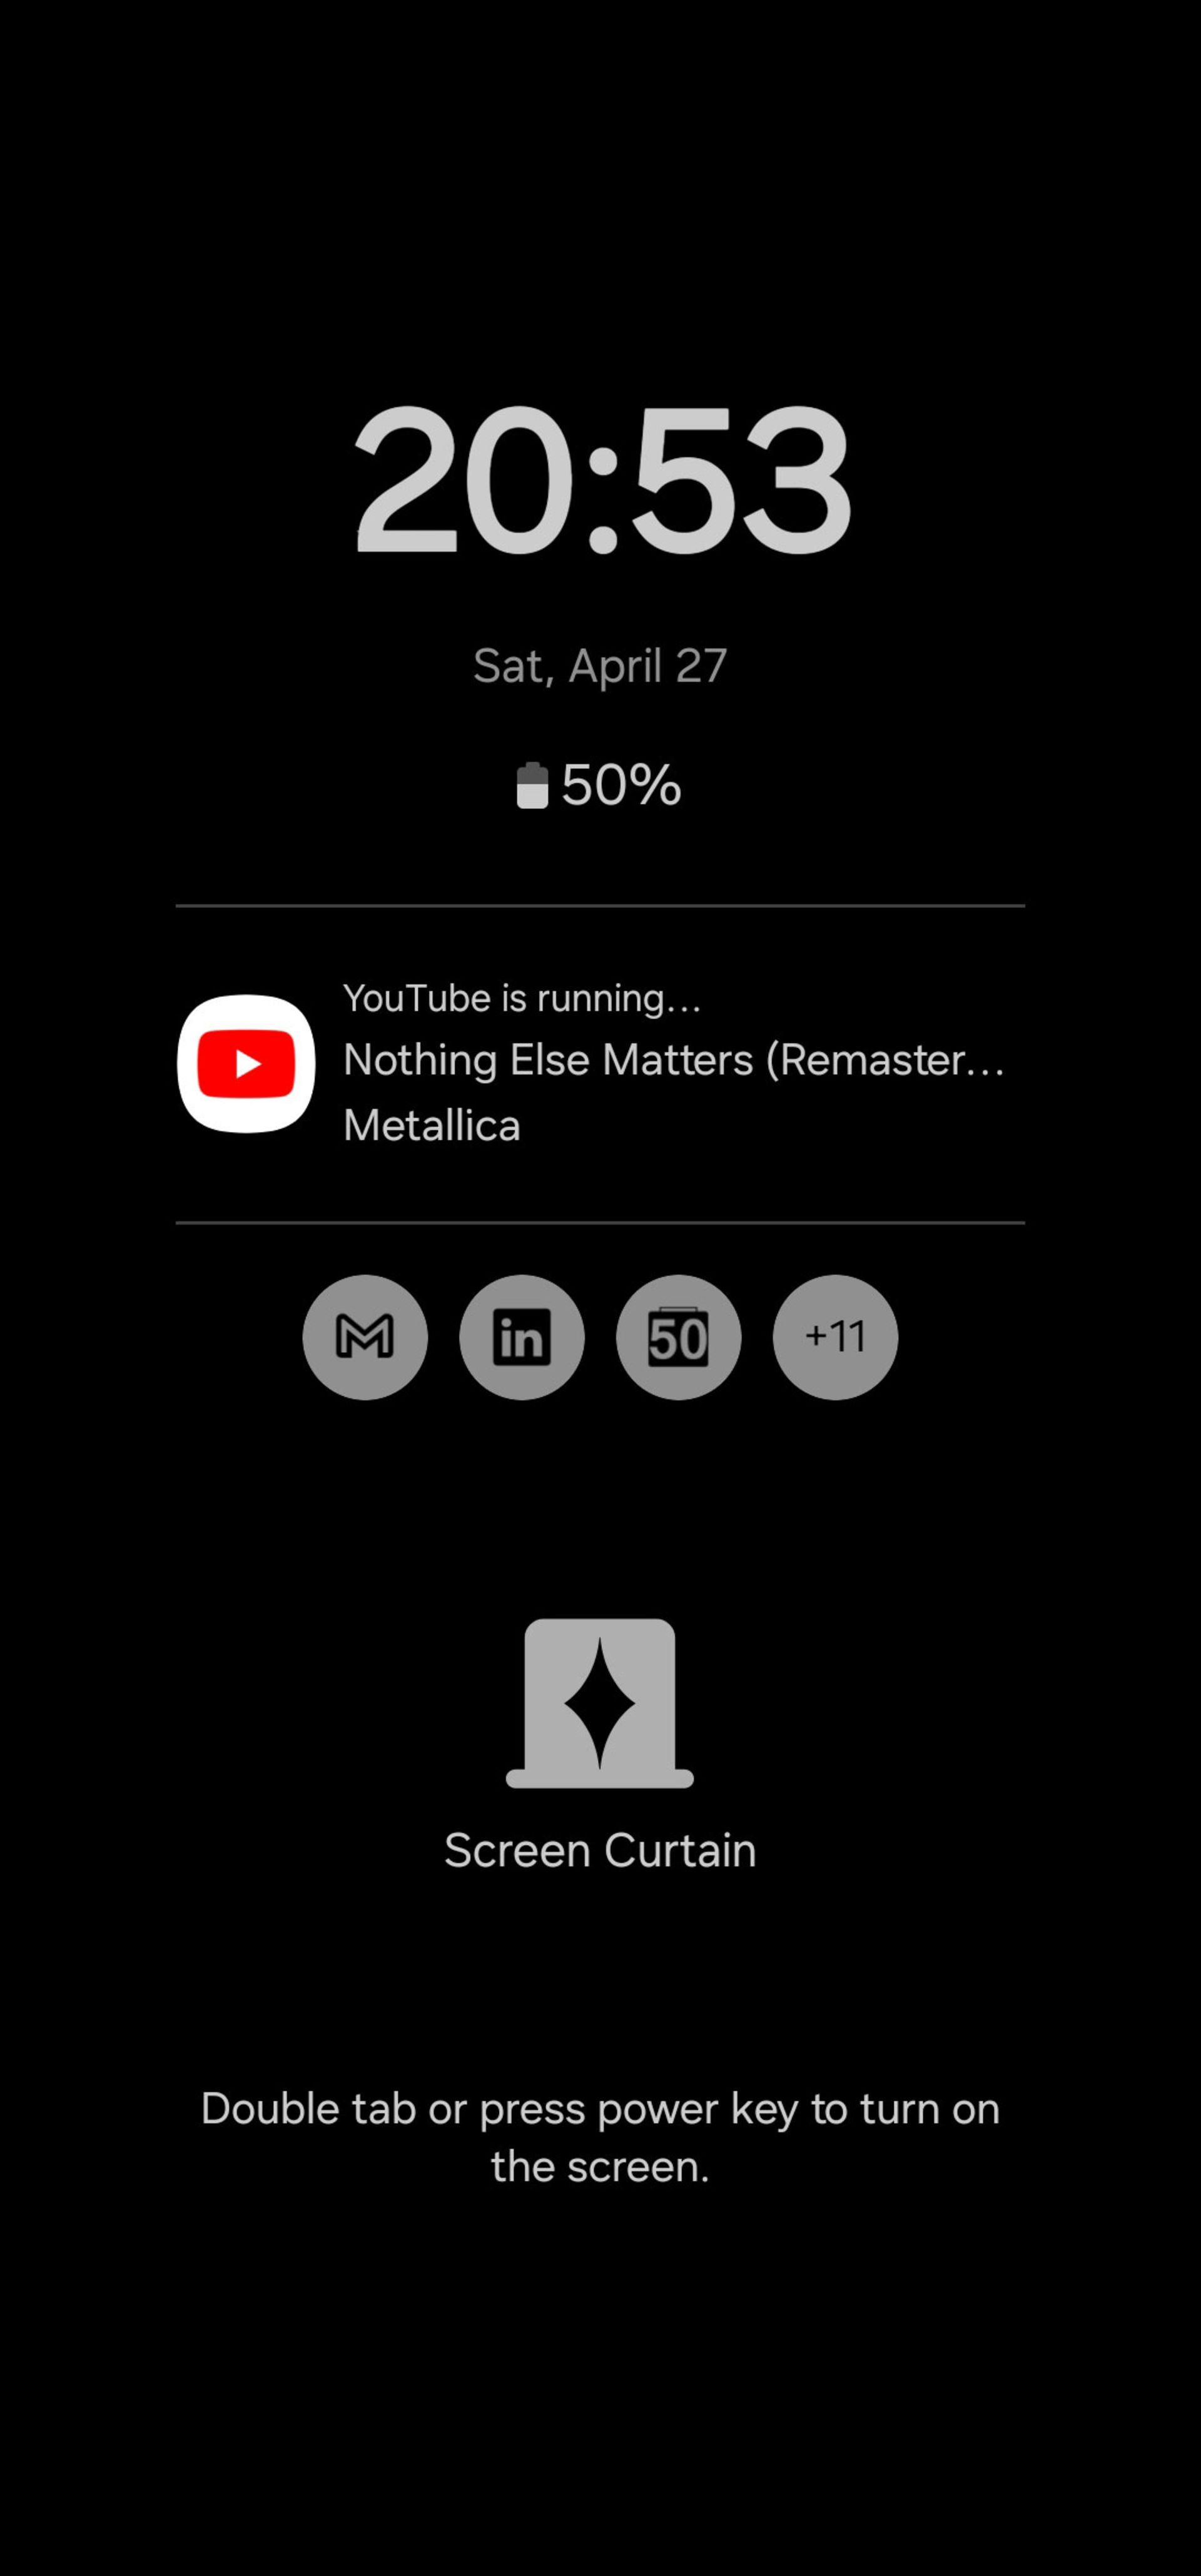 استفاده از قابلیت screen curtain در اپلیکیشن یوتیوب